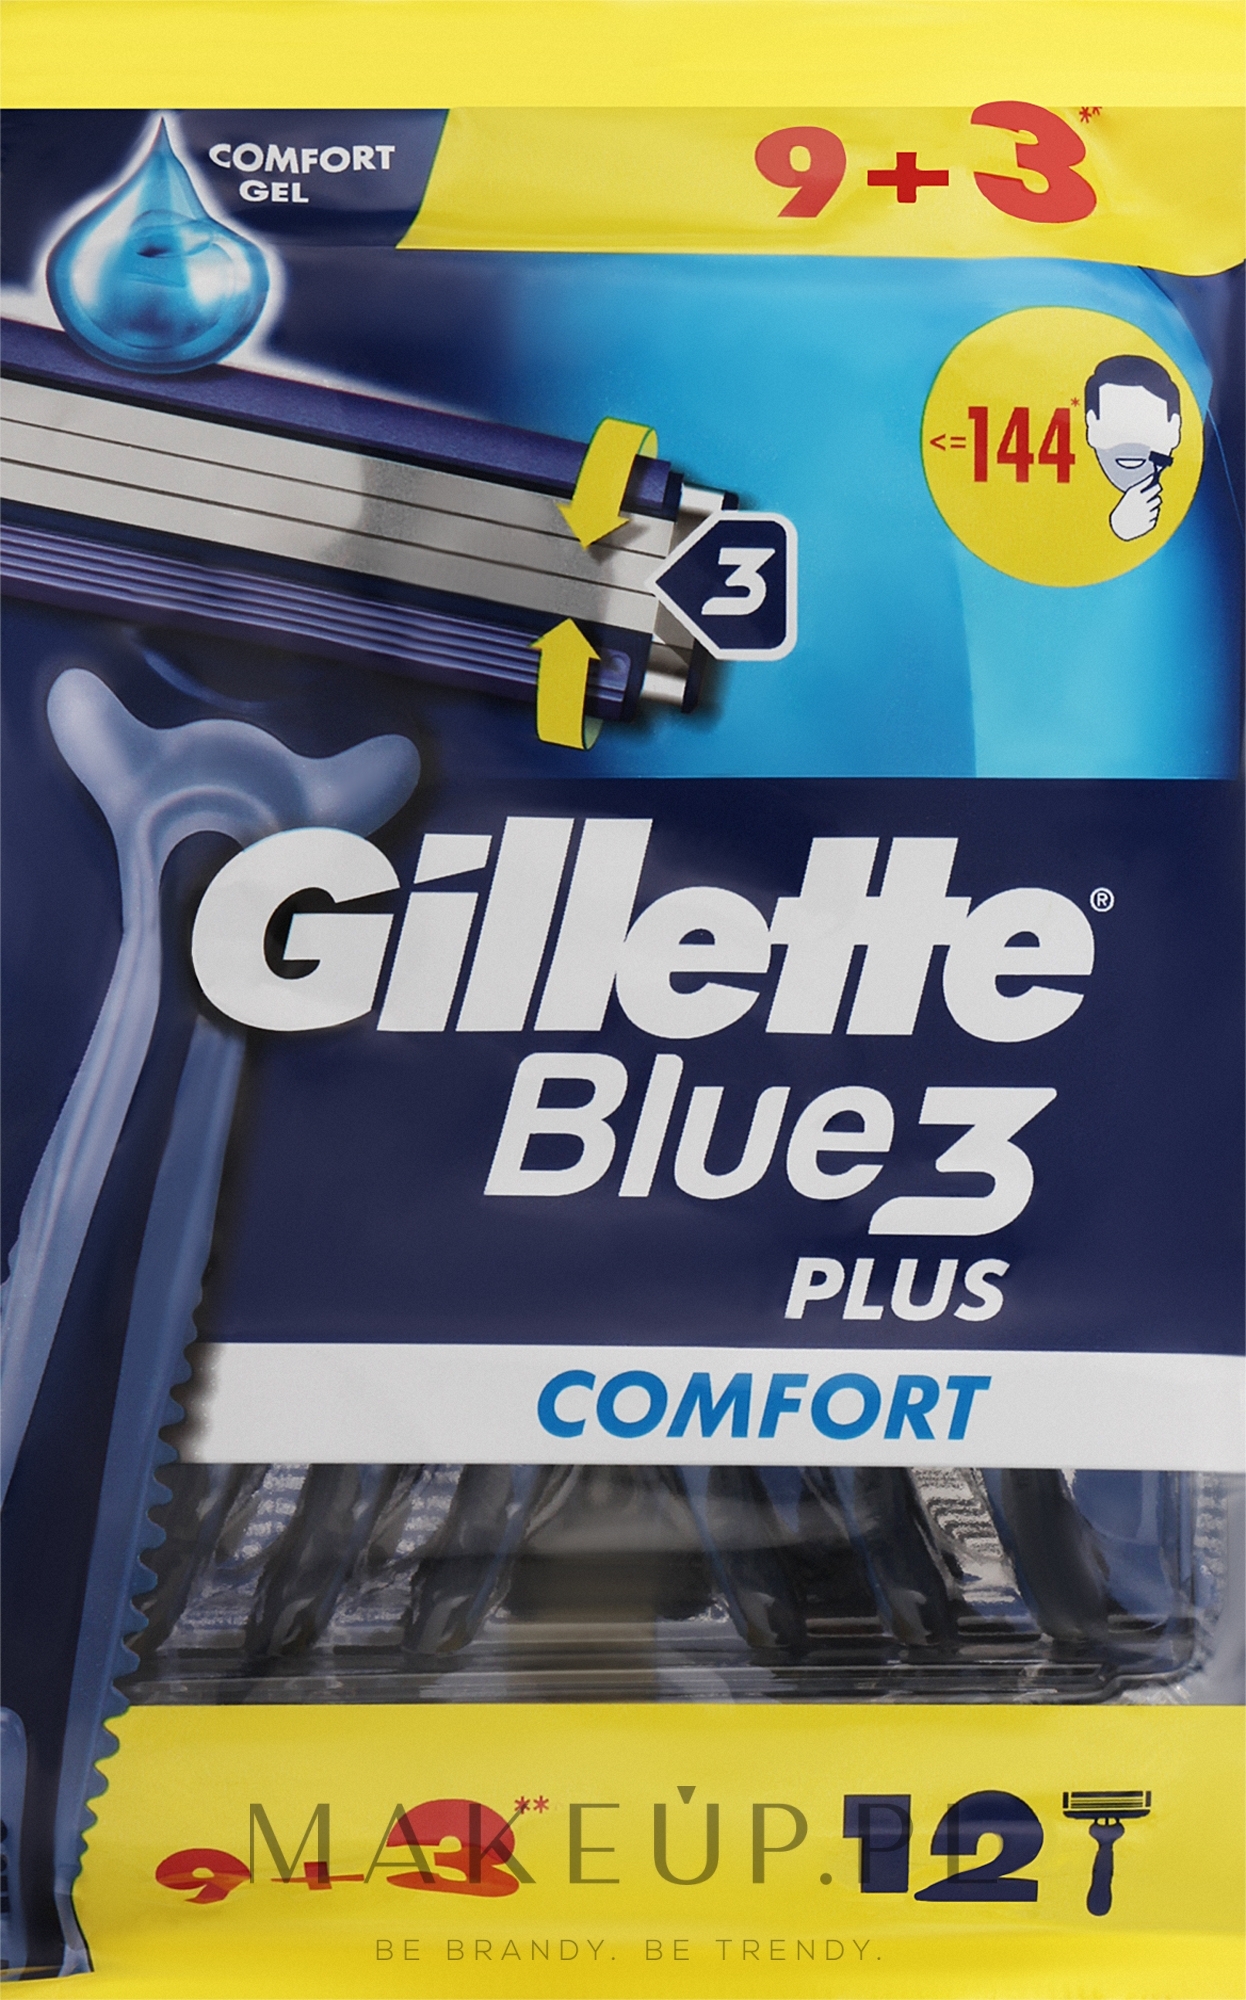 Jednorazowe maszynki do golenia, 12 szt. - Gillette Blue 3 Comfort — Zdjęcie 12 szt.